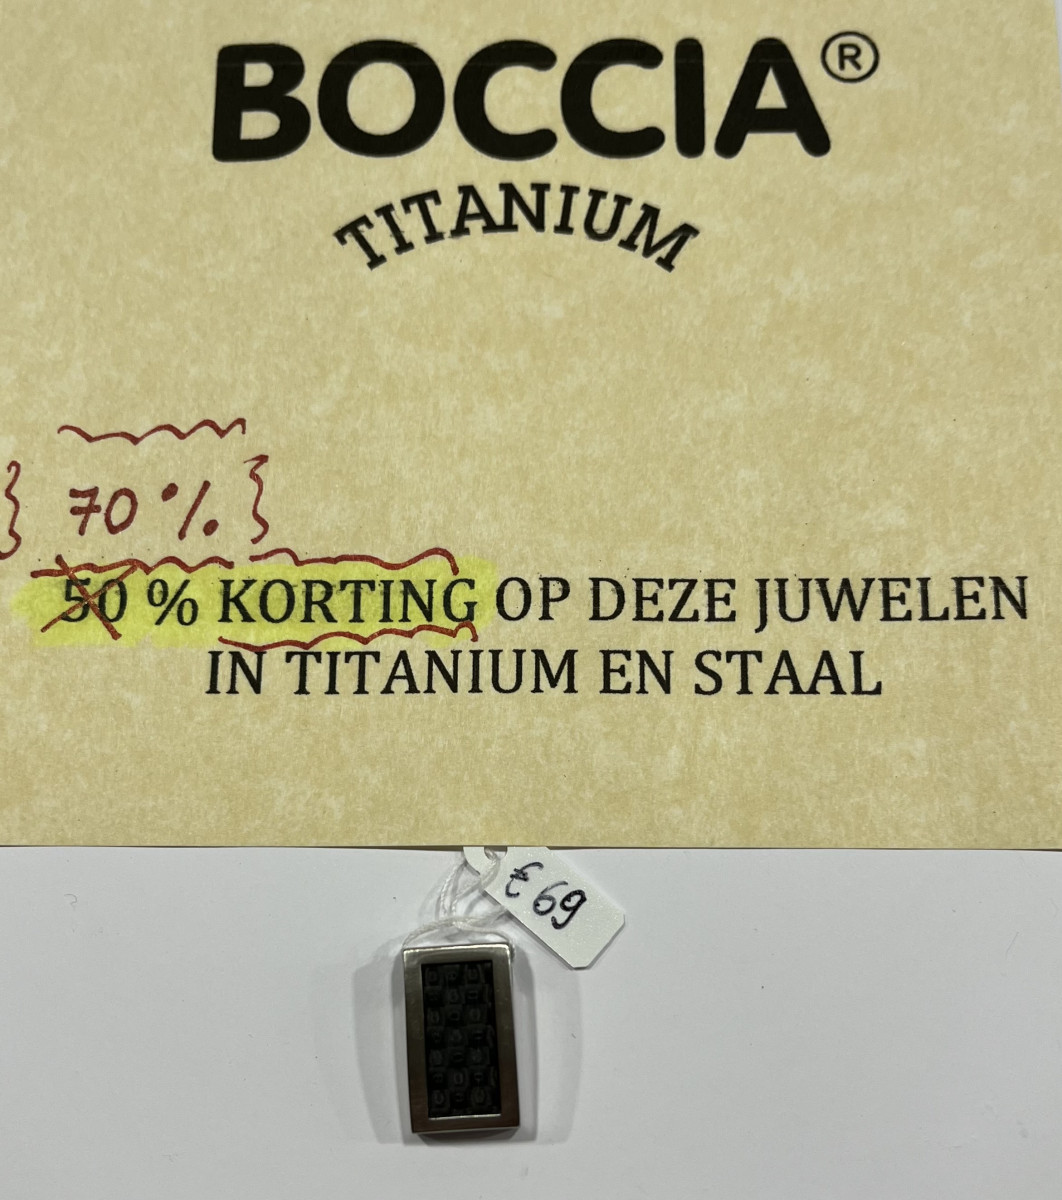 BOCCIA titanium